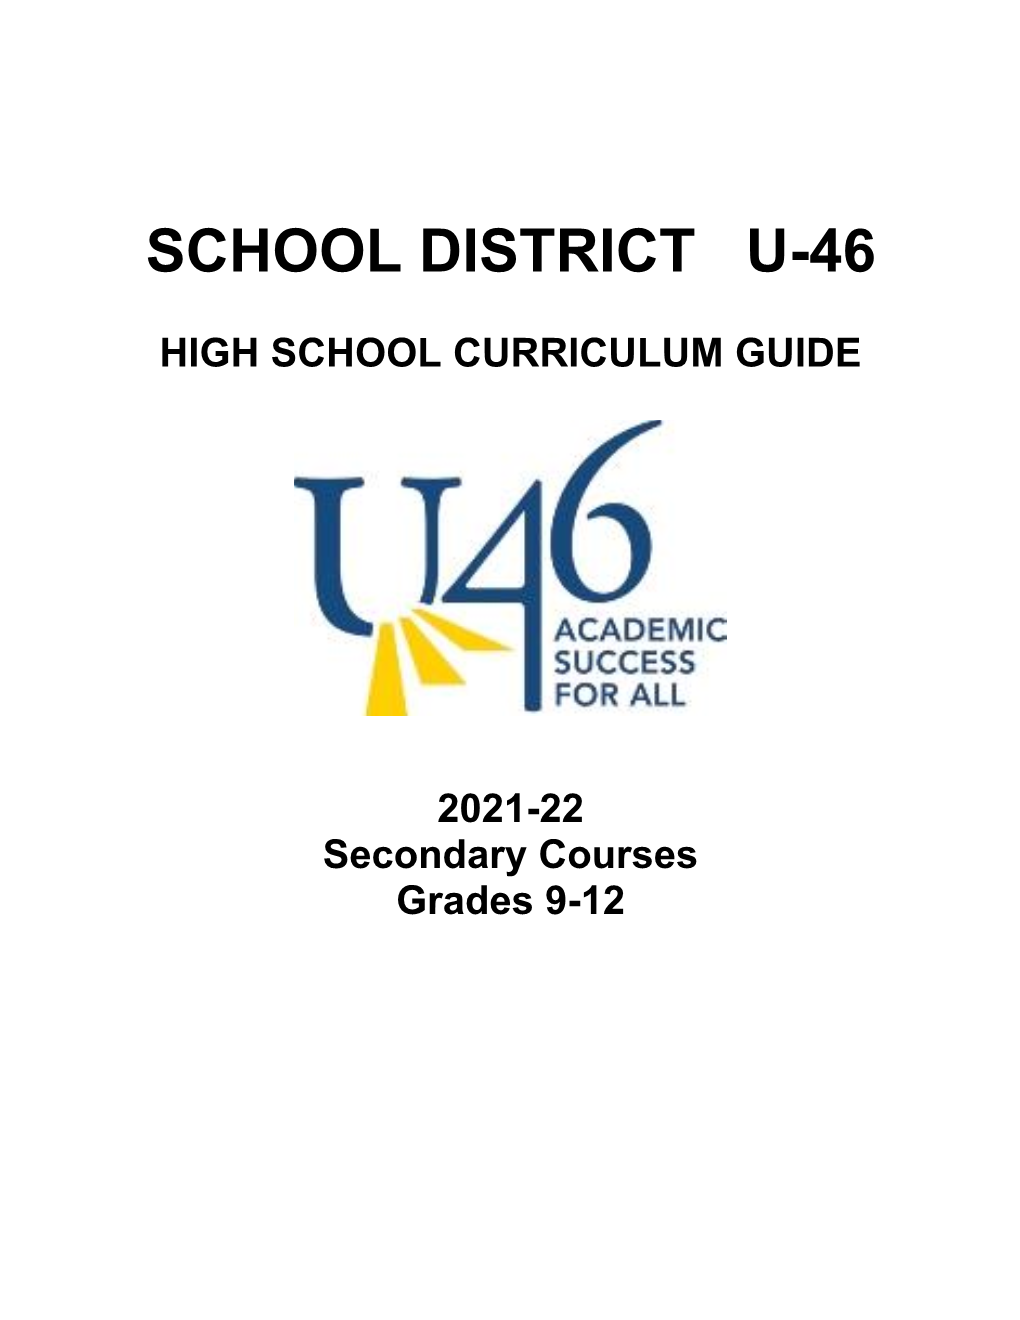 Final.Curriculum.Guide 2021-22.Pdf